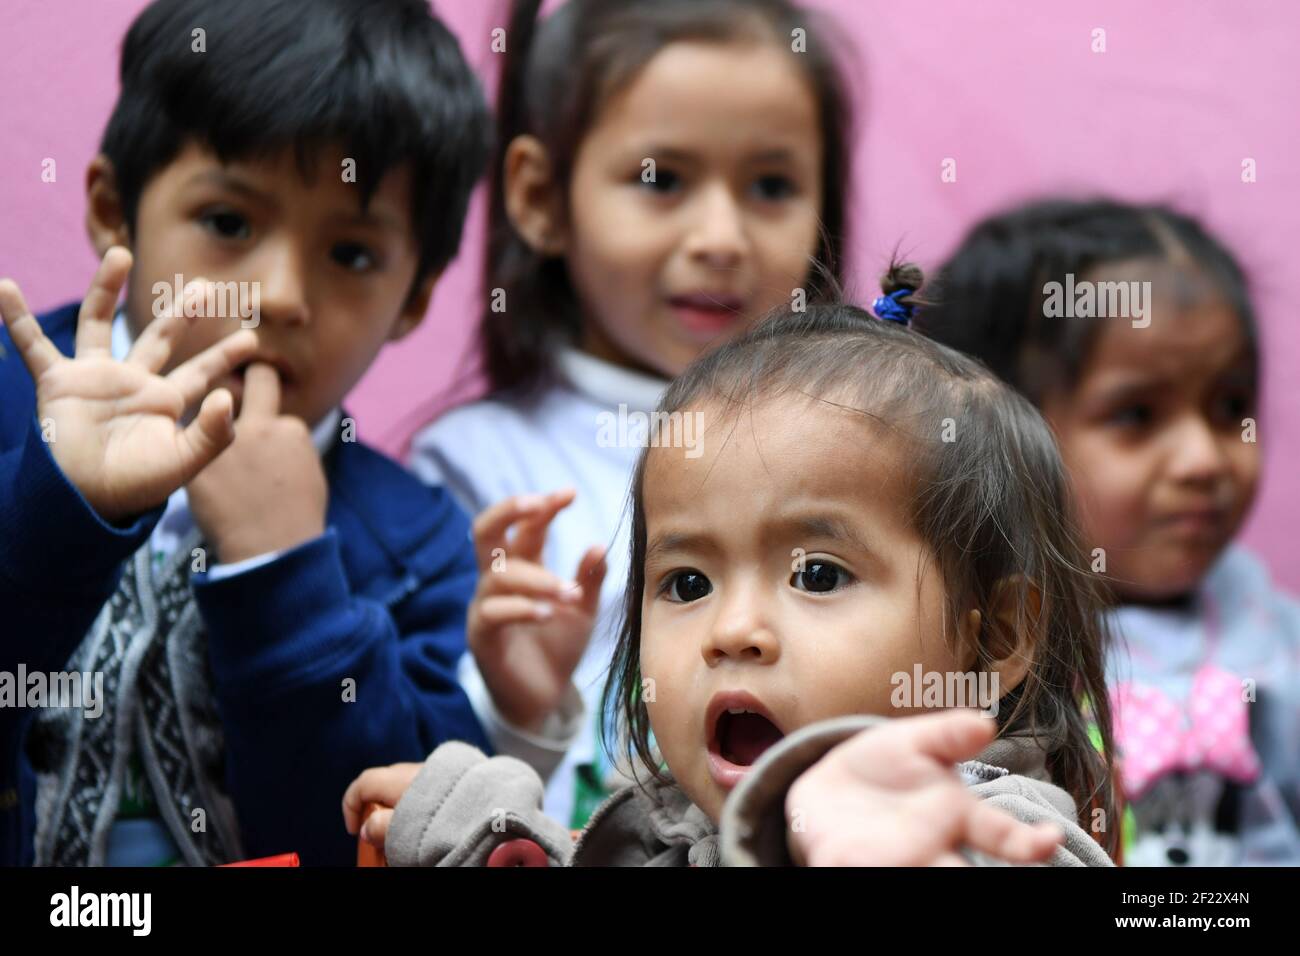 Peruanische Kinder während des Besuchs der französischen Delegation Paris 2024 Kandidatur in Collique Slum für das Projekt "Peru, Freinung, Solidarität" , Lima, September 11, 2017, Foto Philippe Millereau / KMSP / PARIS 2024 / DPPI Stockfoto